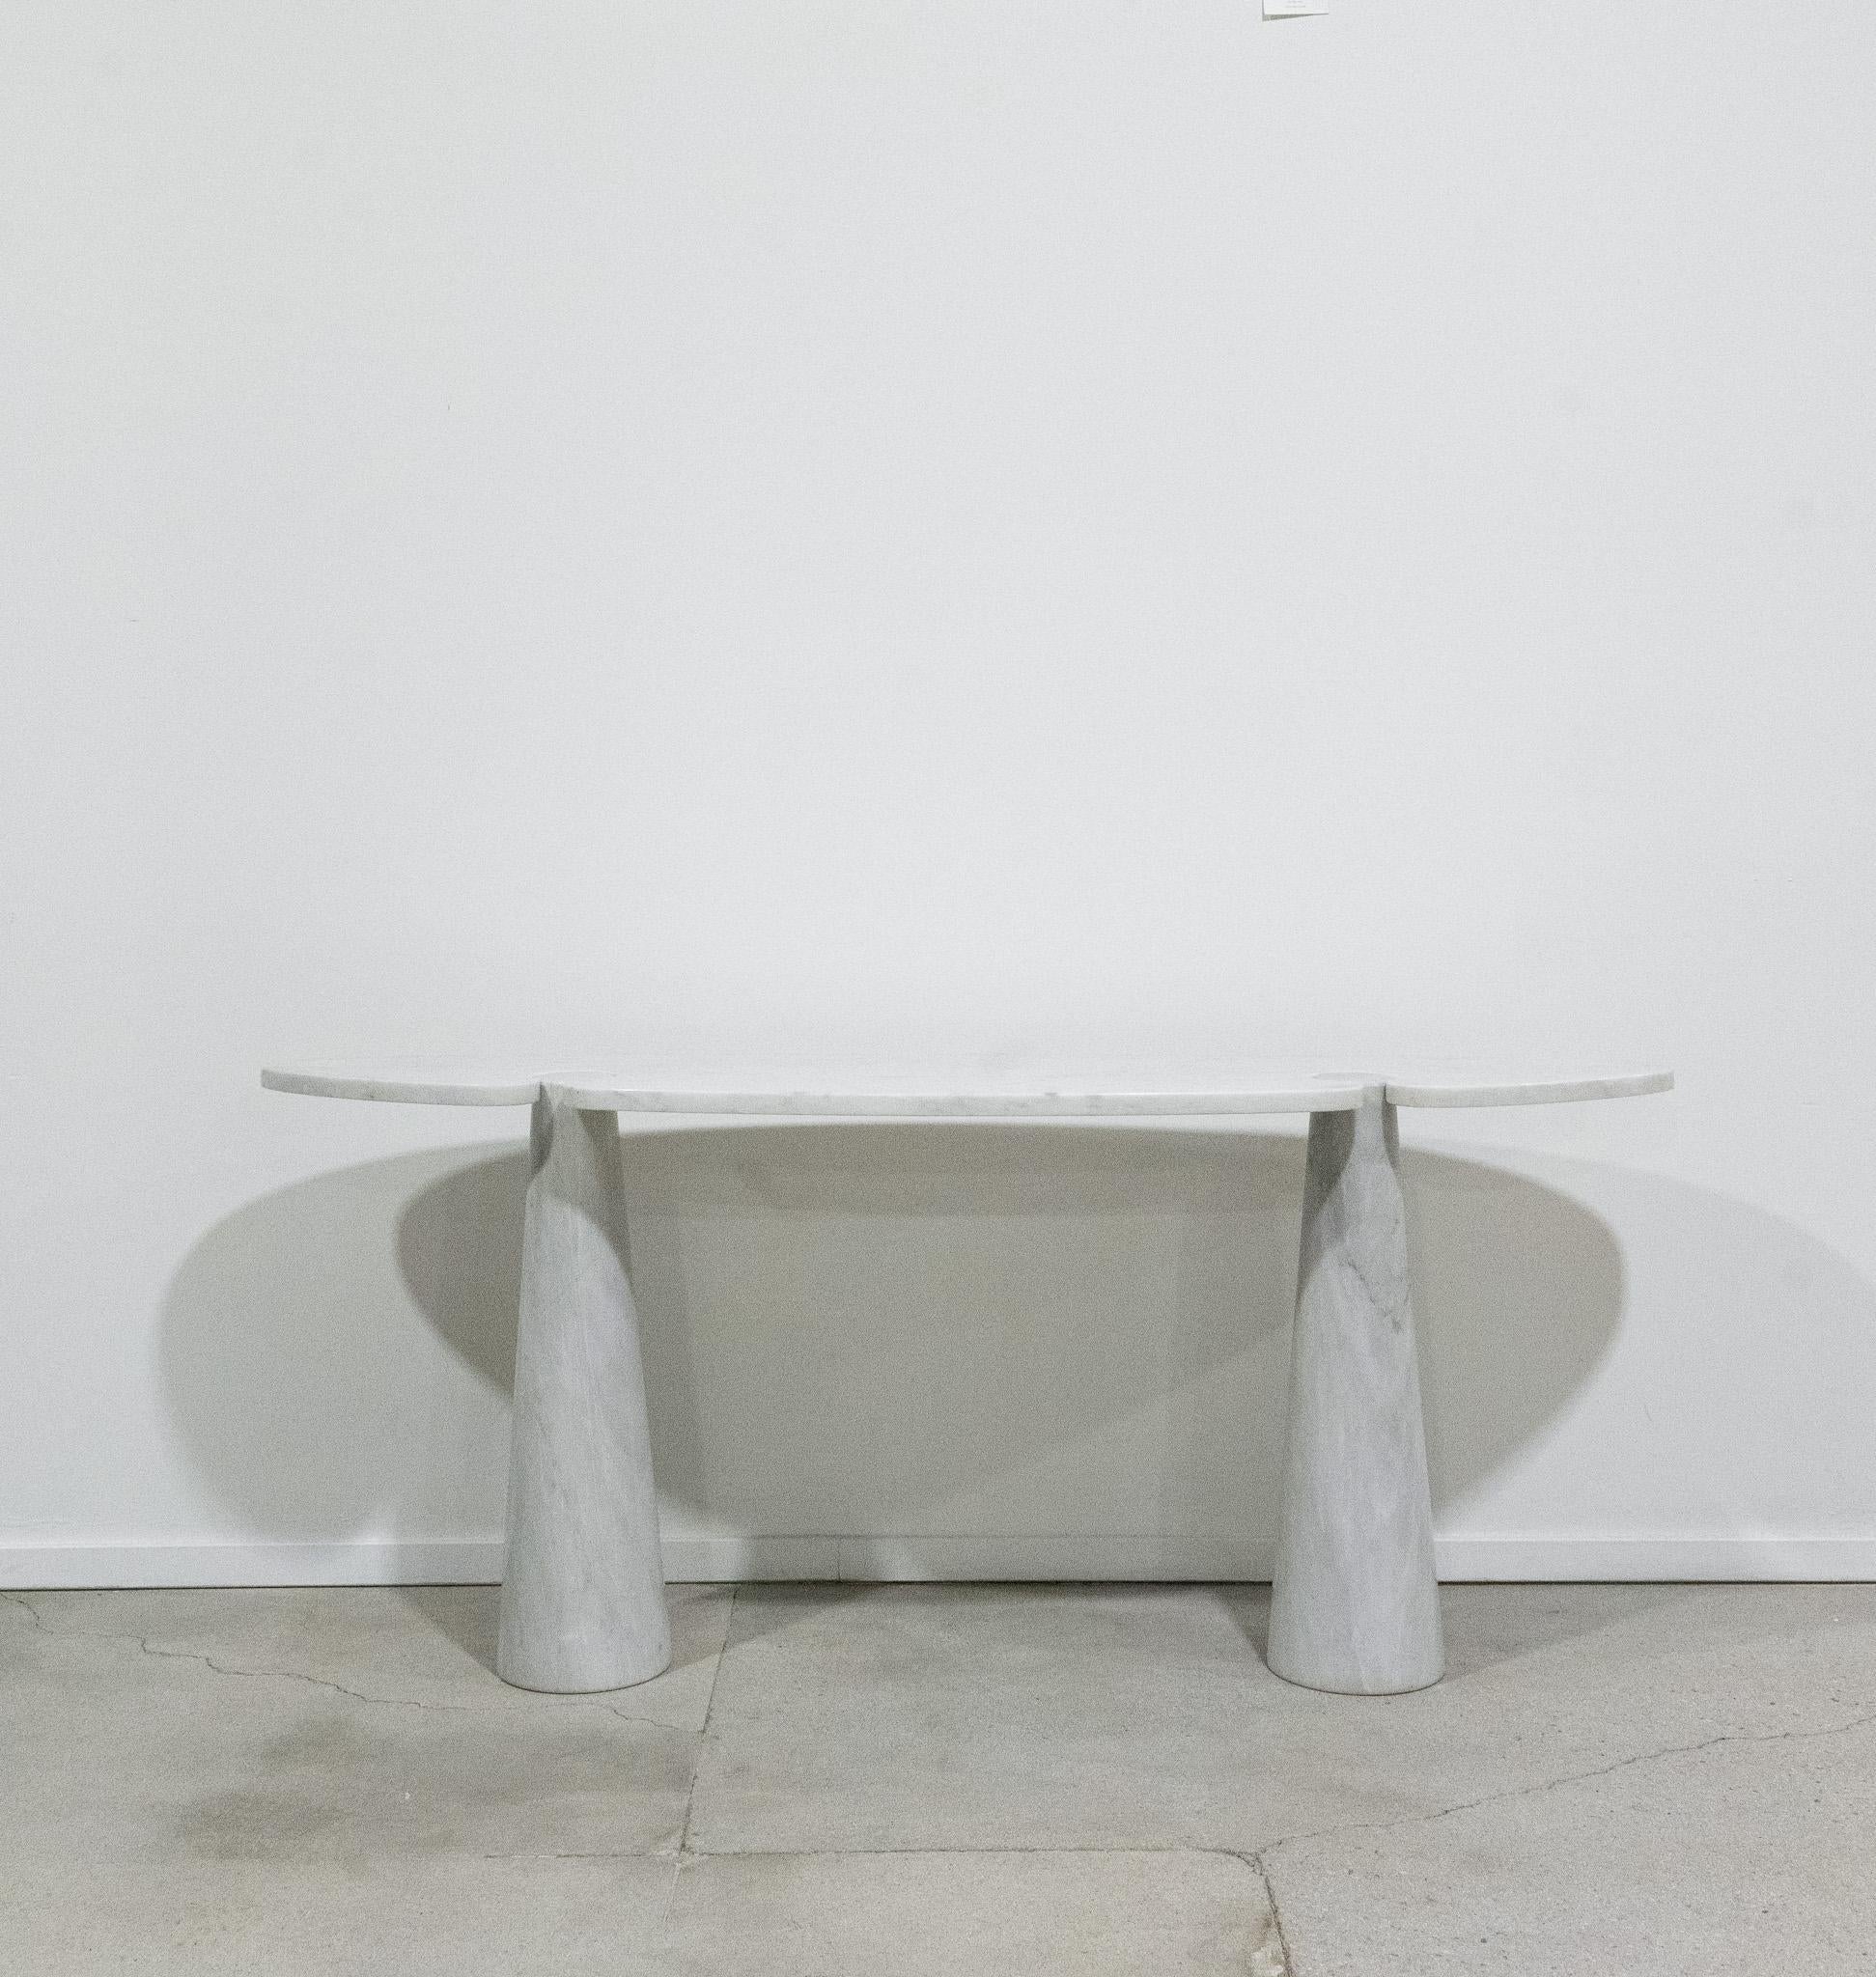 Incroyable table conçue par Angelo Mangiarotti pour Skipper de la série Eros, table console iconique en marbre de Carrare avec un grand plateau elliptique monté sur deux bases coniques. 

Vintage original.

Nous avons un expéditeur hebdomadaire pour